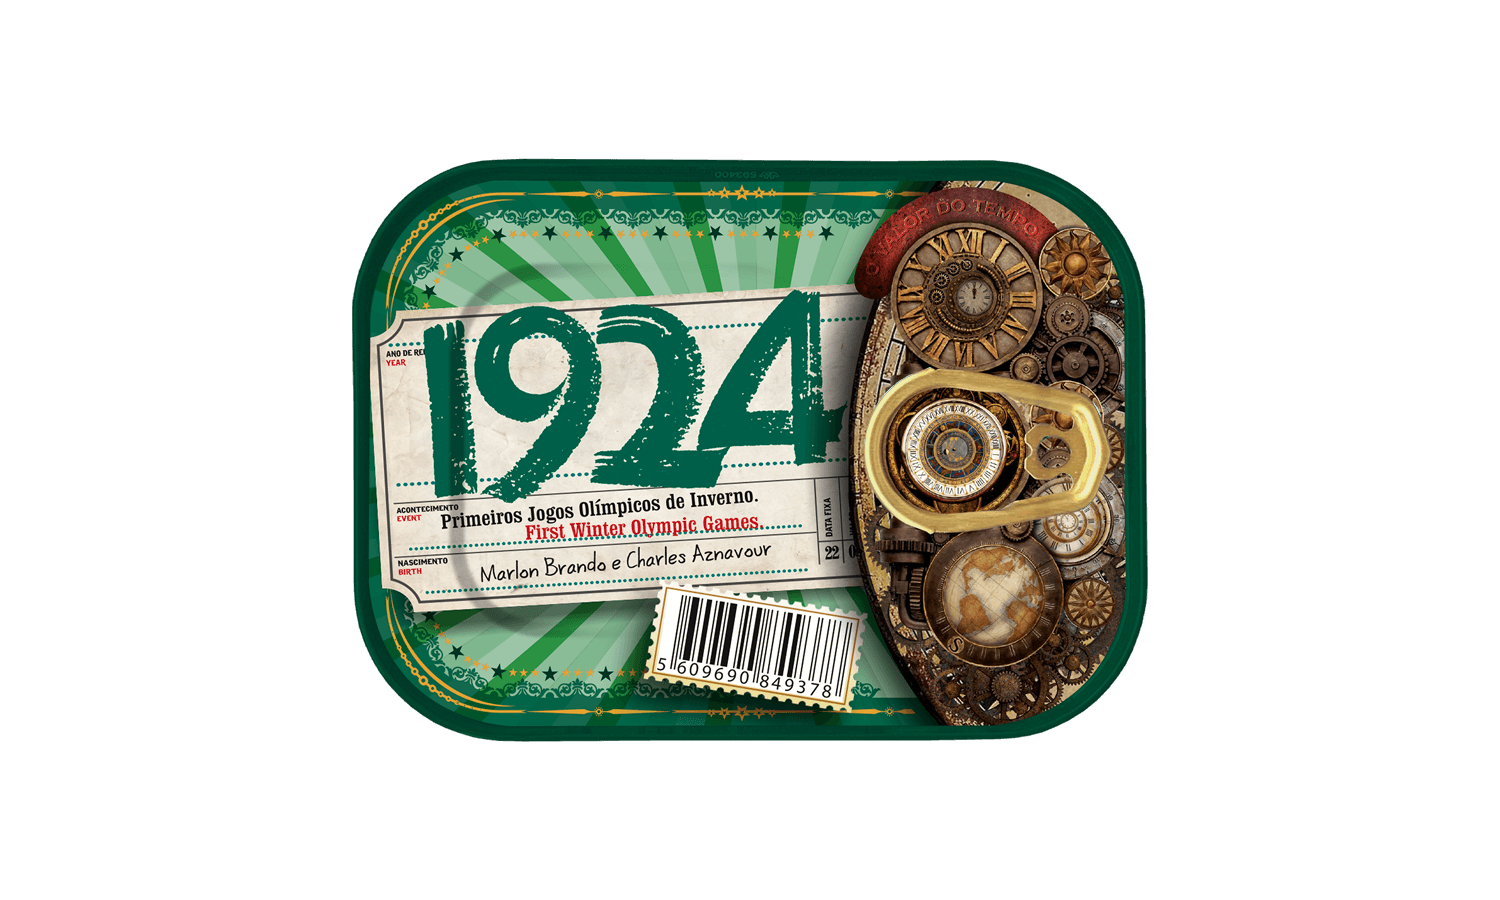 Timeless Sardines | 1924